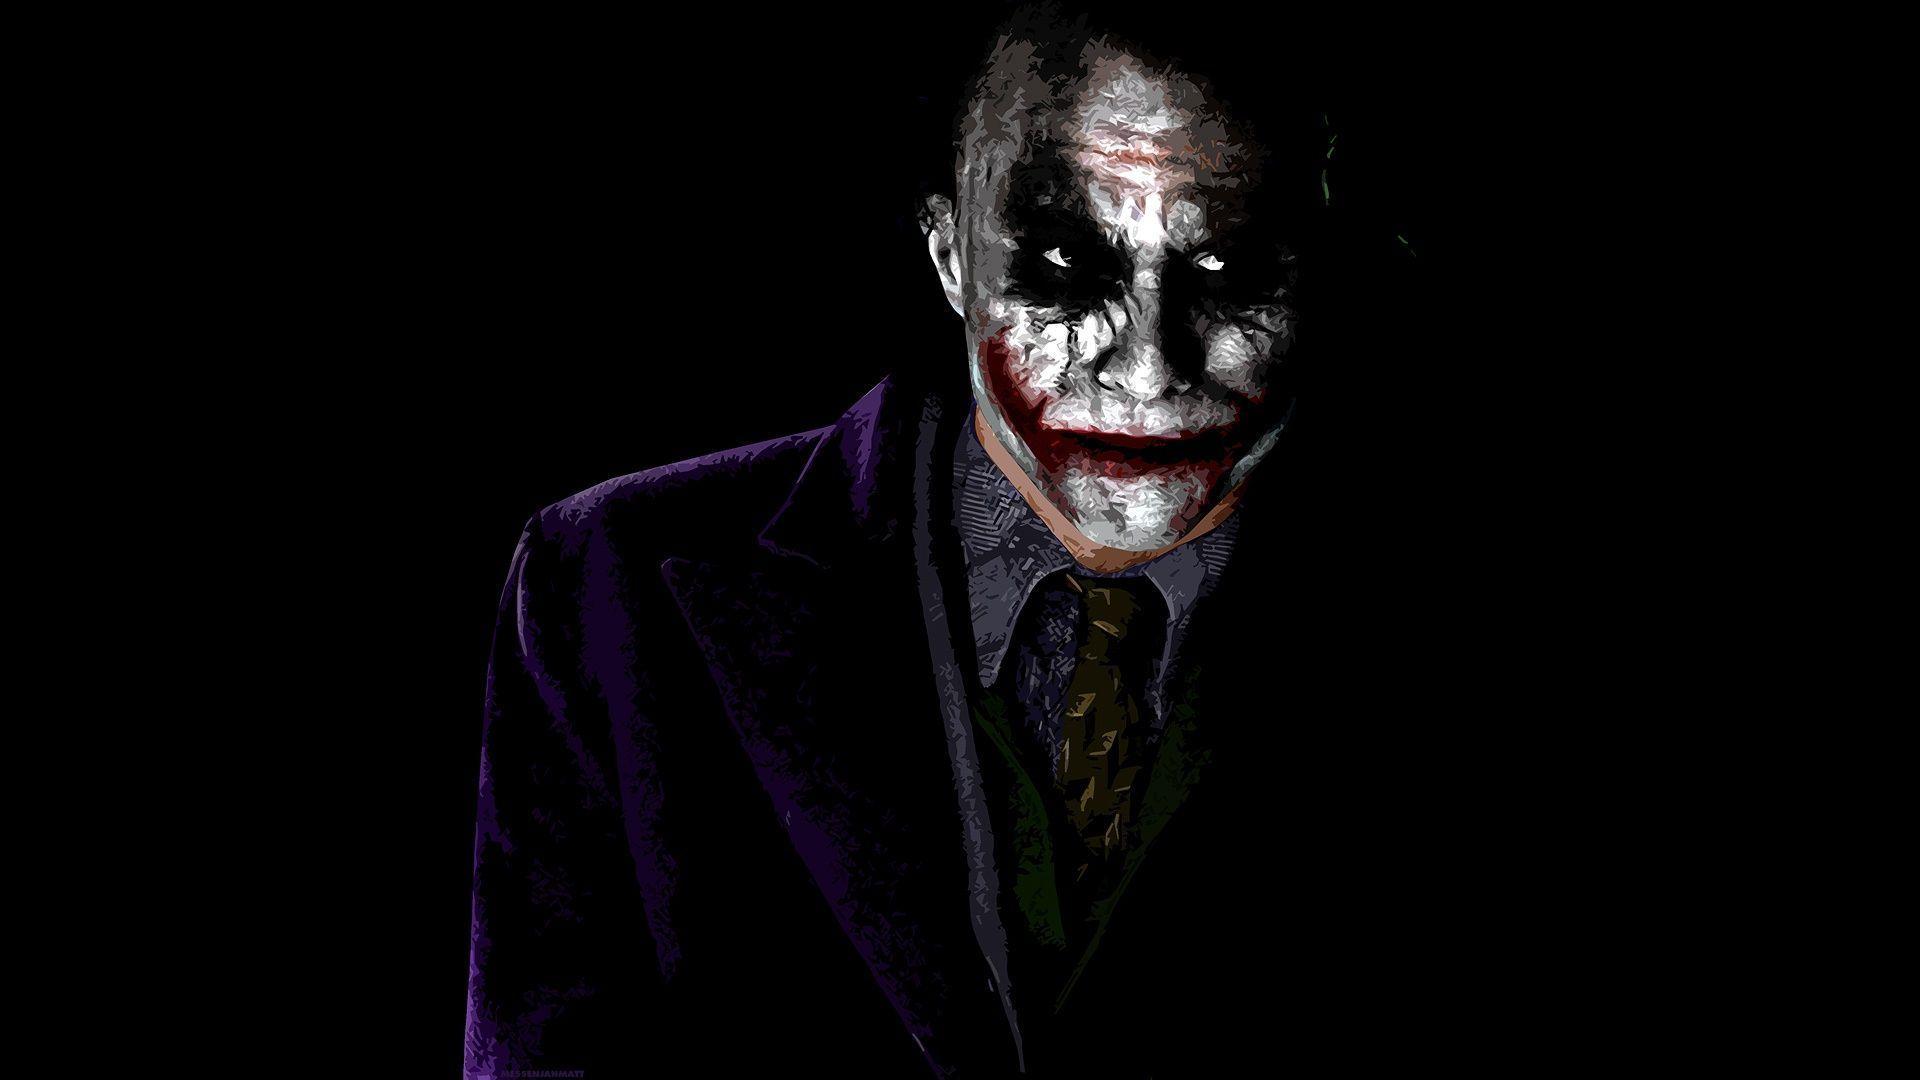 18,148 Joker Black Images, Stock Photos & Vectors | Shutterstock